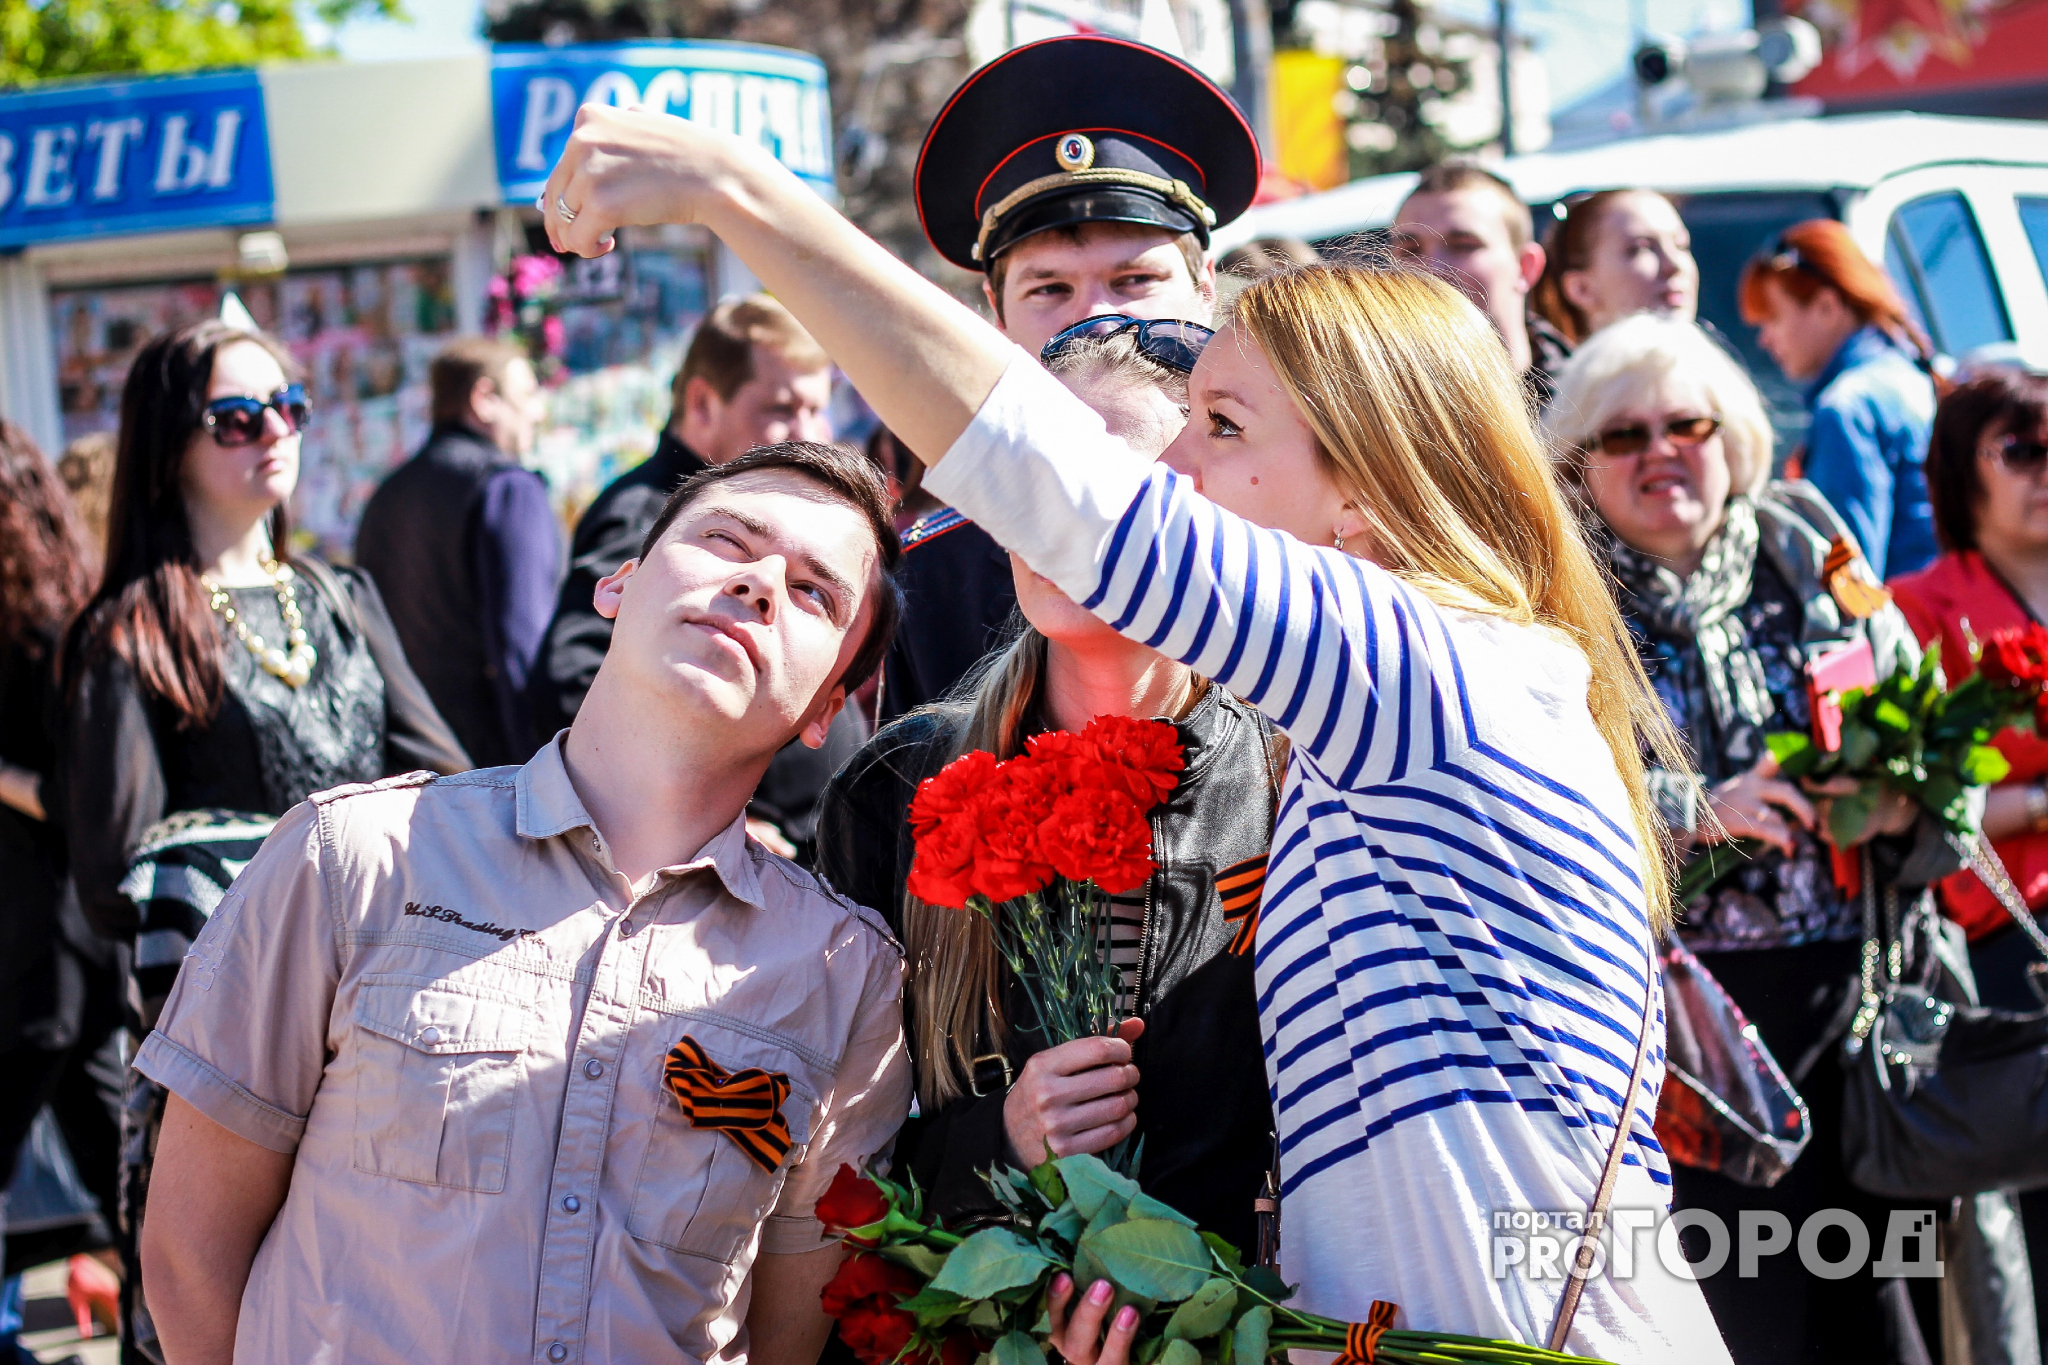 Календарь выходных: сколько дней россияне будут отдыхать в честь Дня Победы?